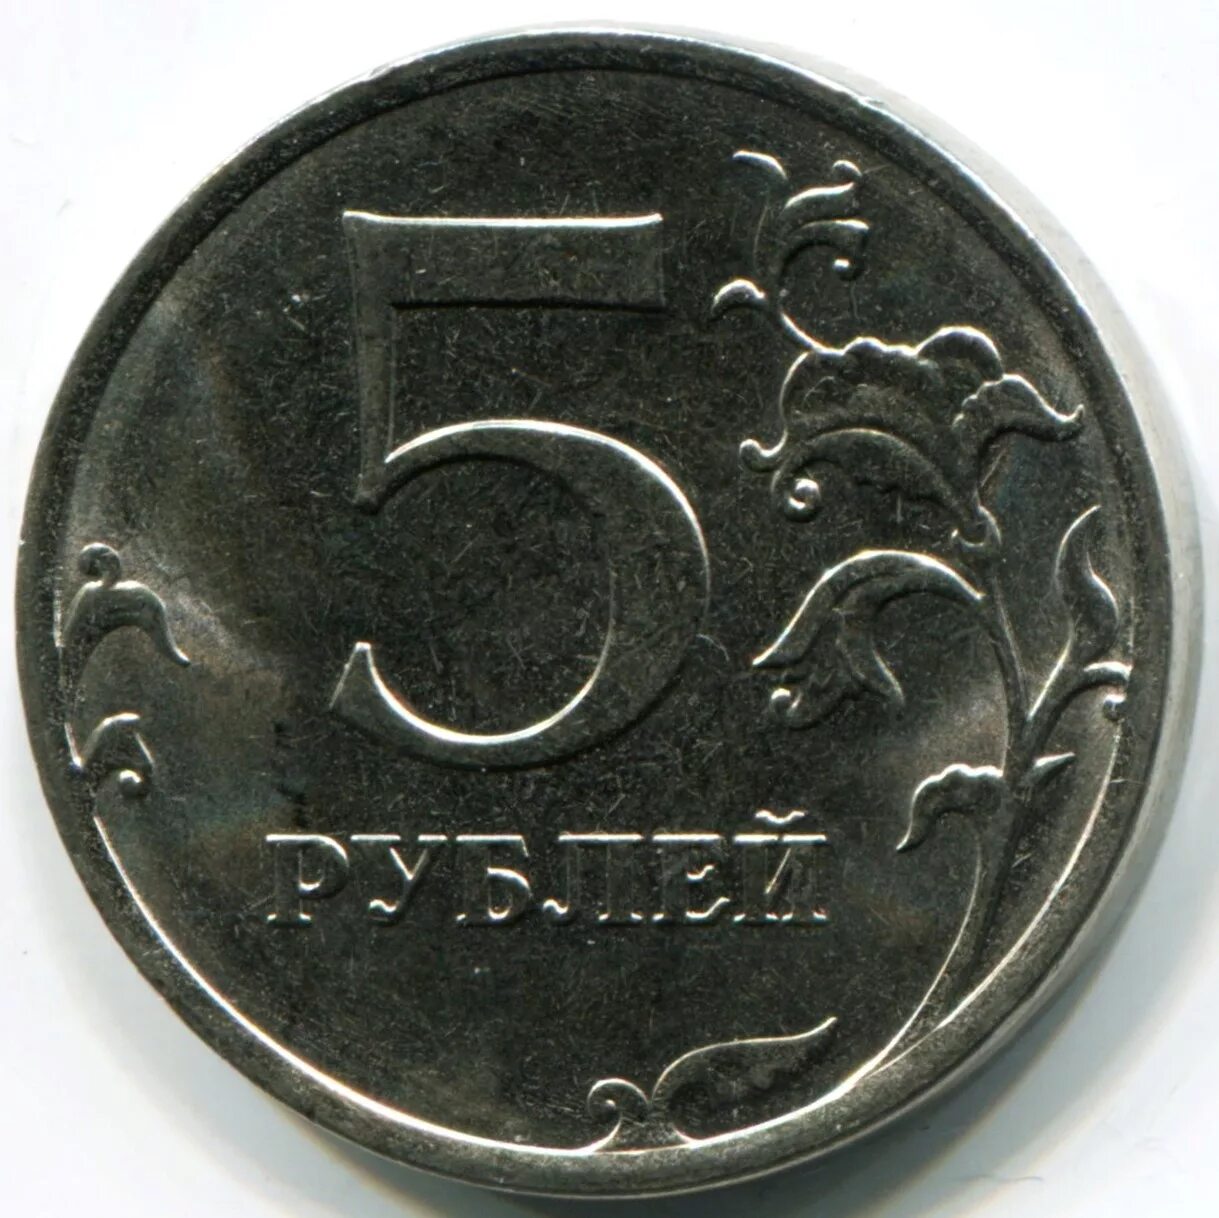 5 рублей металл. 5 Рублей 1997 года СПМД И ММД. Монета 5 рублей. Диаметр 5 рублевой монеты. Пять рублей.